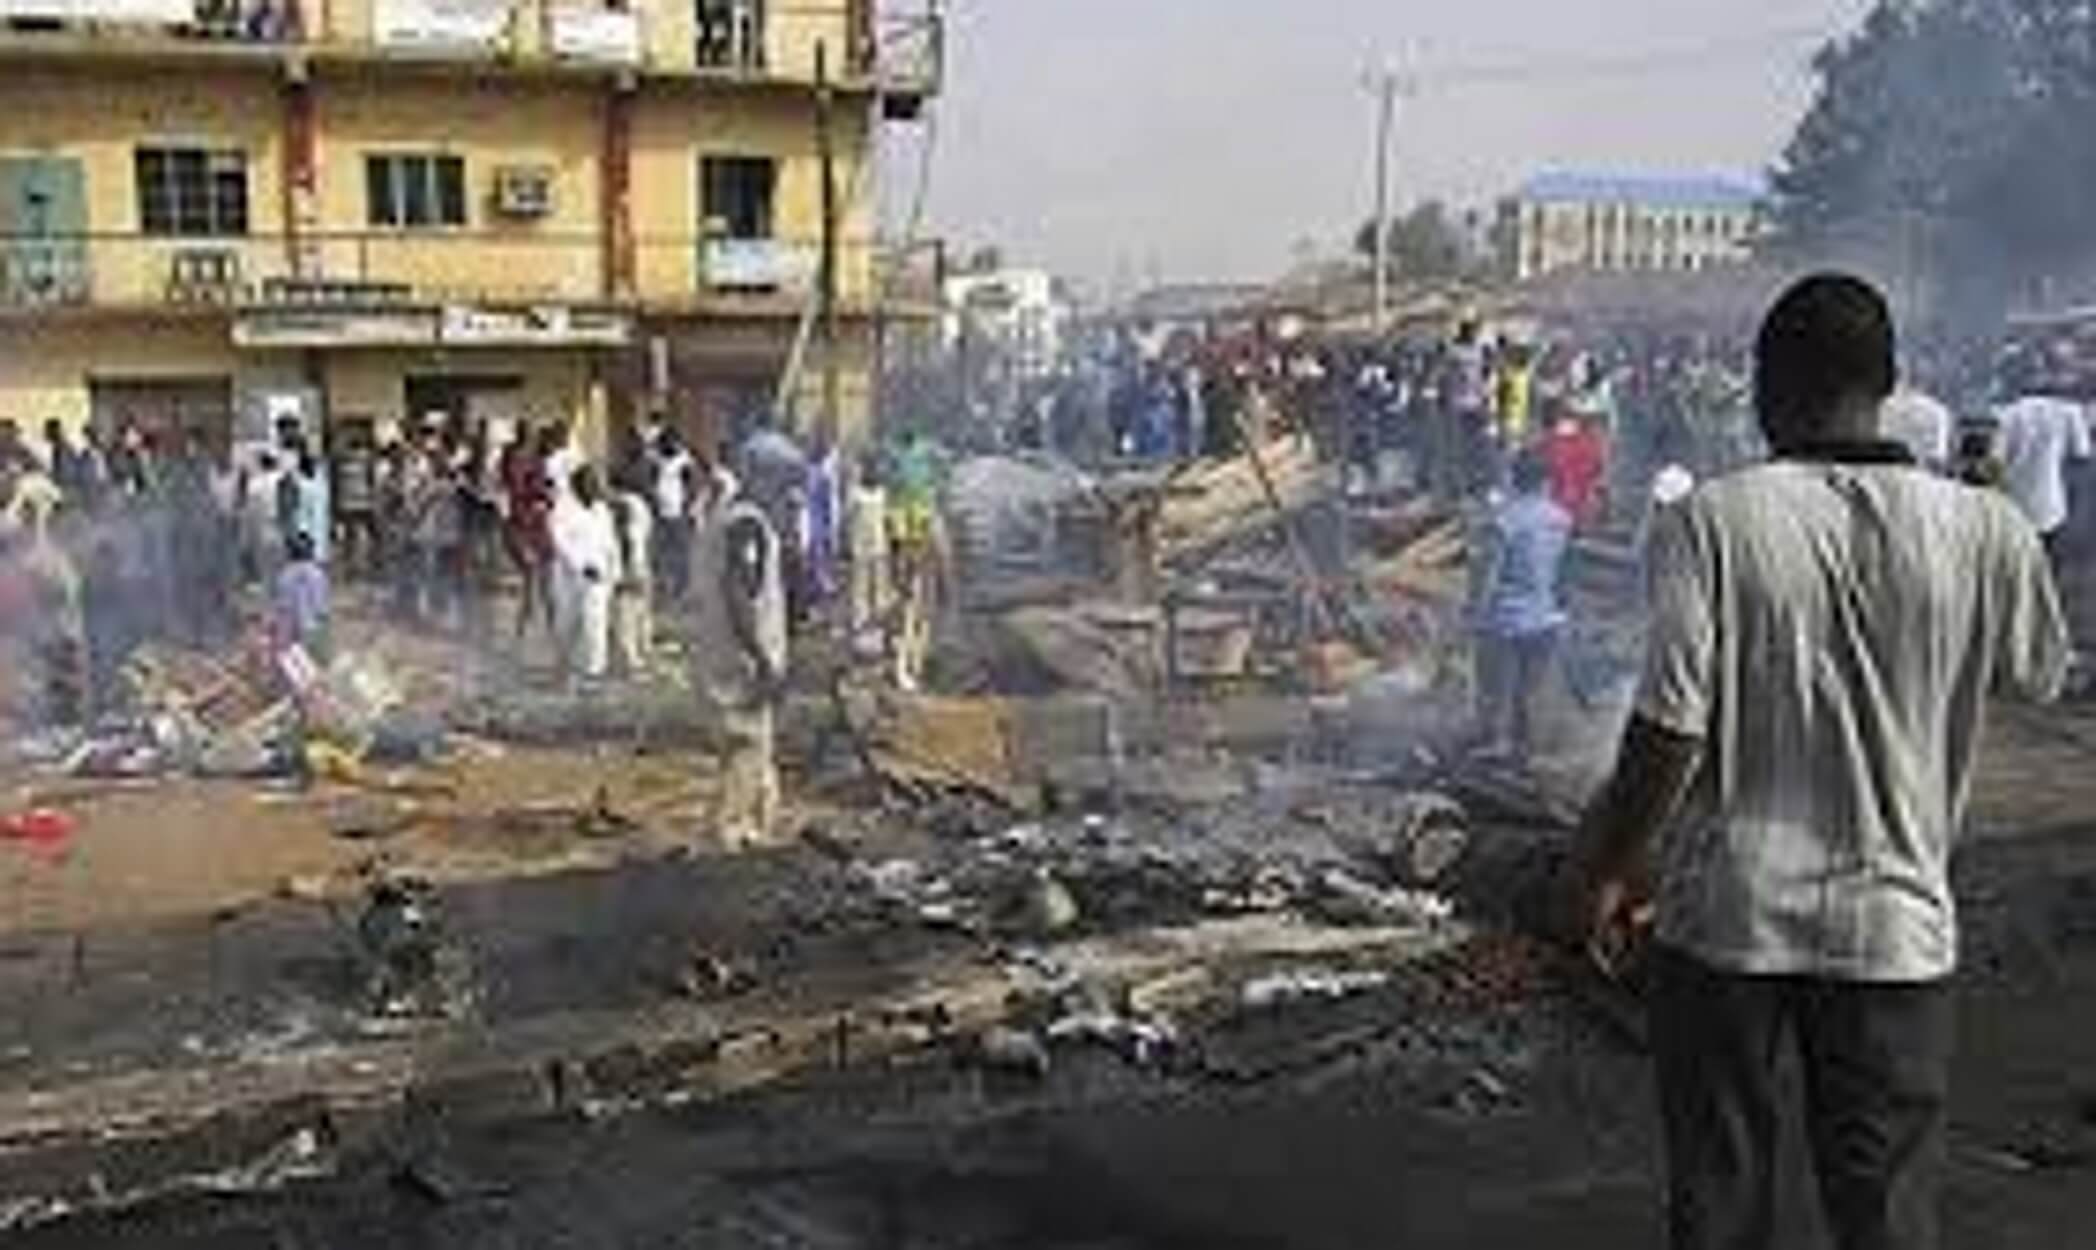 Nιγηρία: Οκτώ αγρότες δολοφονήθηκαν από τζιχαντιστές της Μπόκο Χαράμ